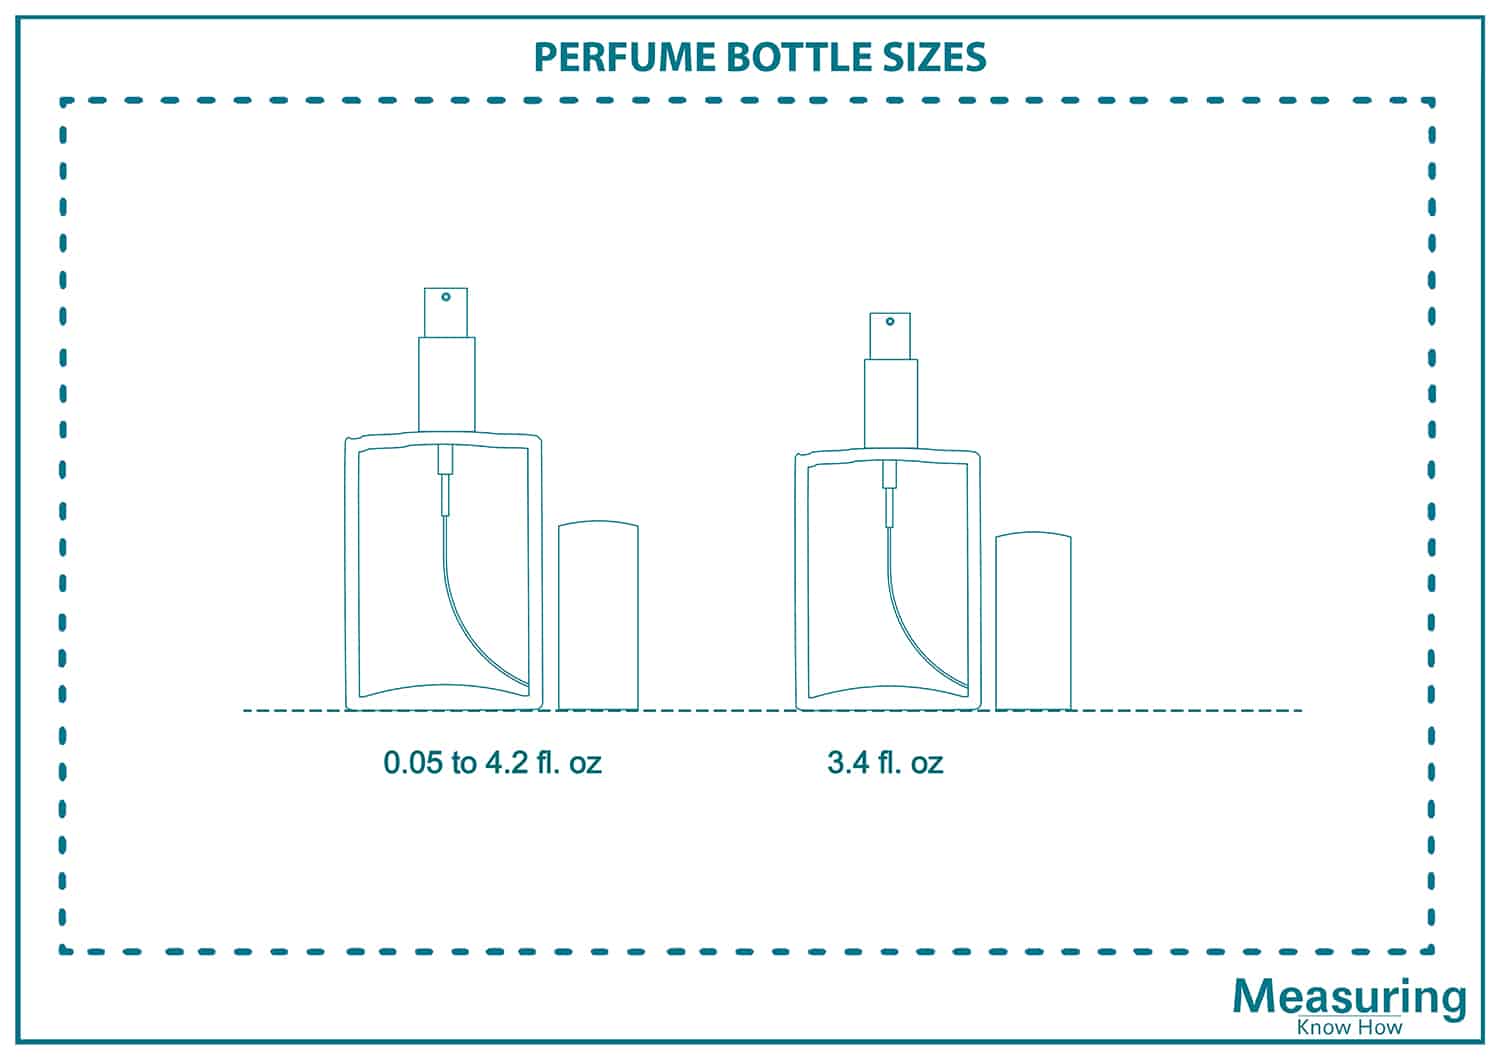 Perfume bottle sizes